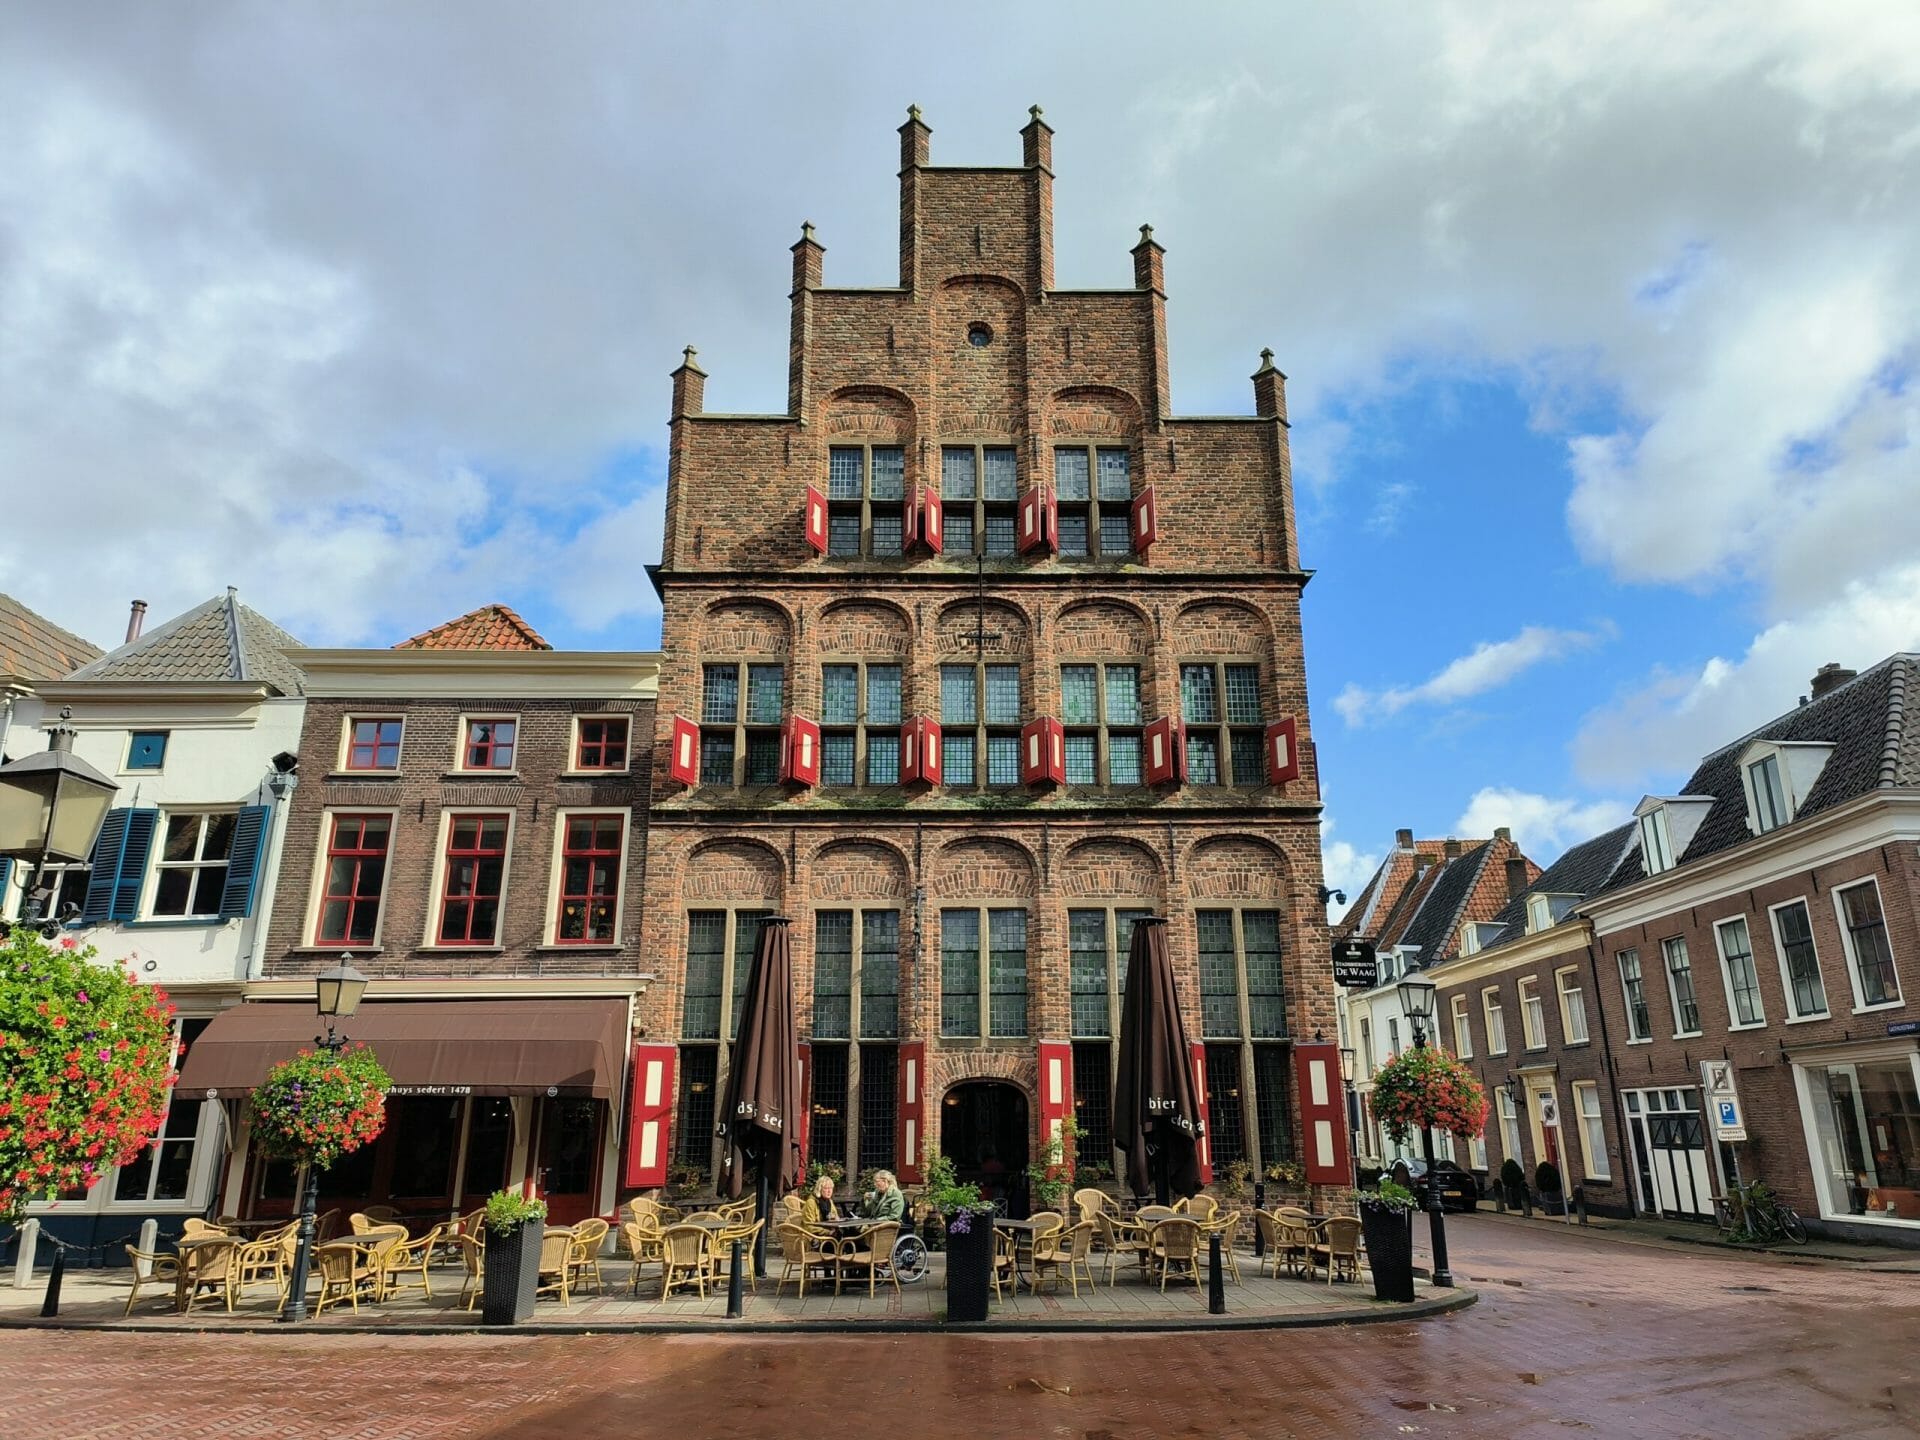 Culturele stedentrip naar Arnhem en omgeving